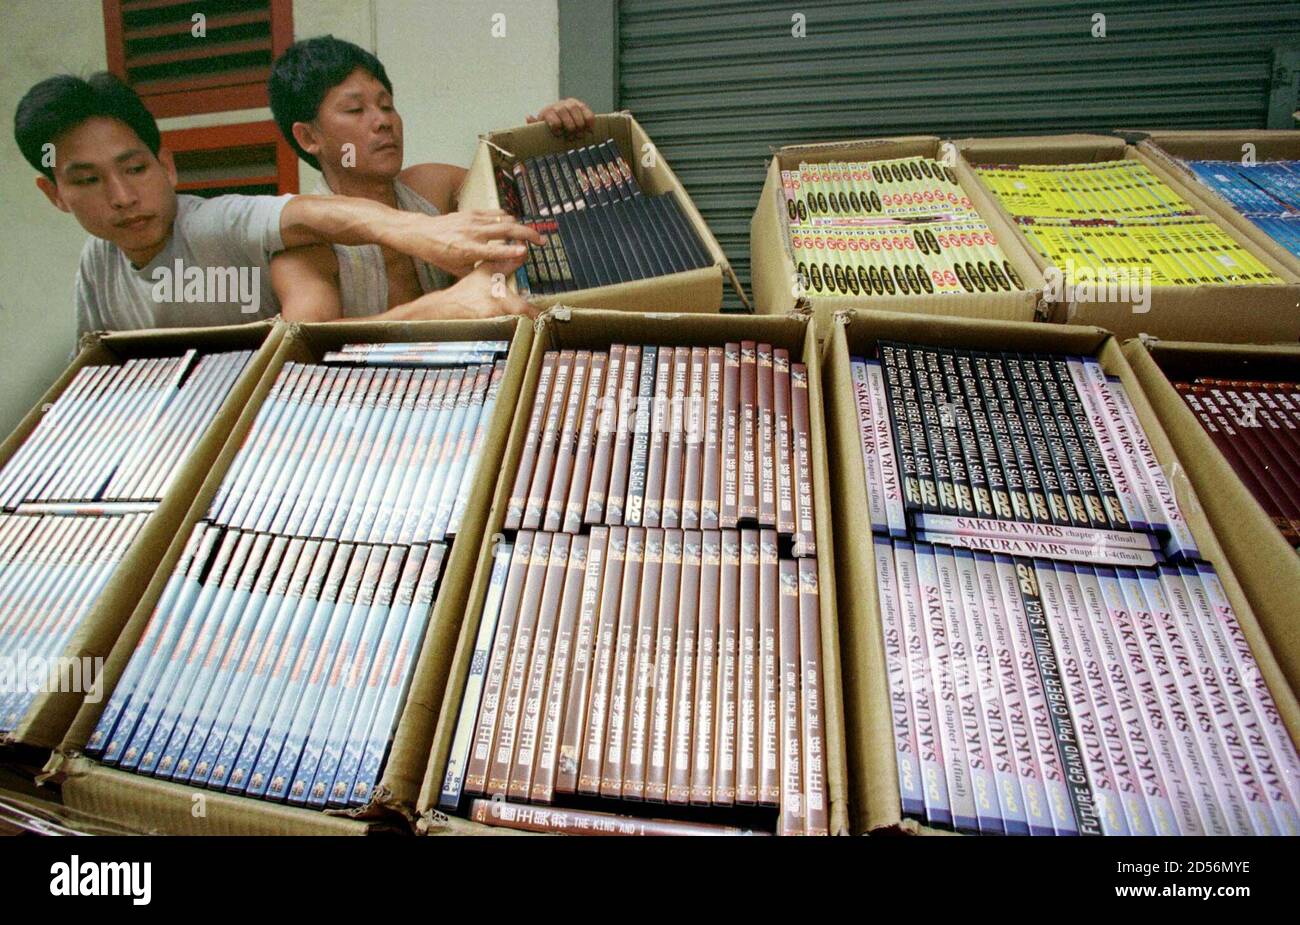 Los trabajadores exhiben discos de Video Digital (DVD) pirateados en una  conferencia de prensa en Hong Kong el 6 de noviembre. Los funcionarios de  aduanas de Hong Kong confiscaron más de 270,000